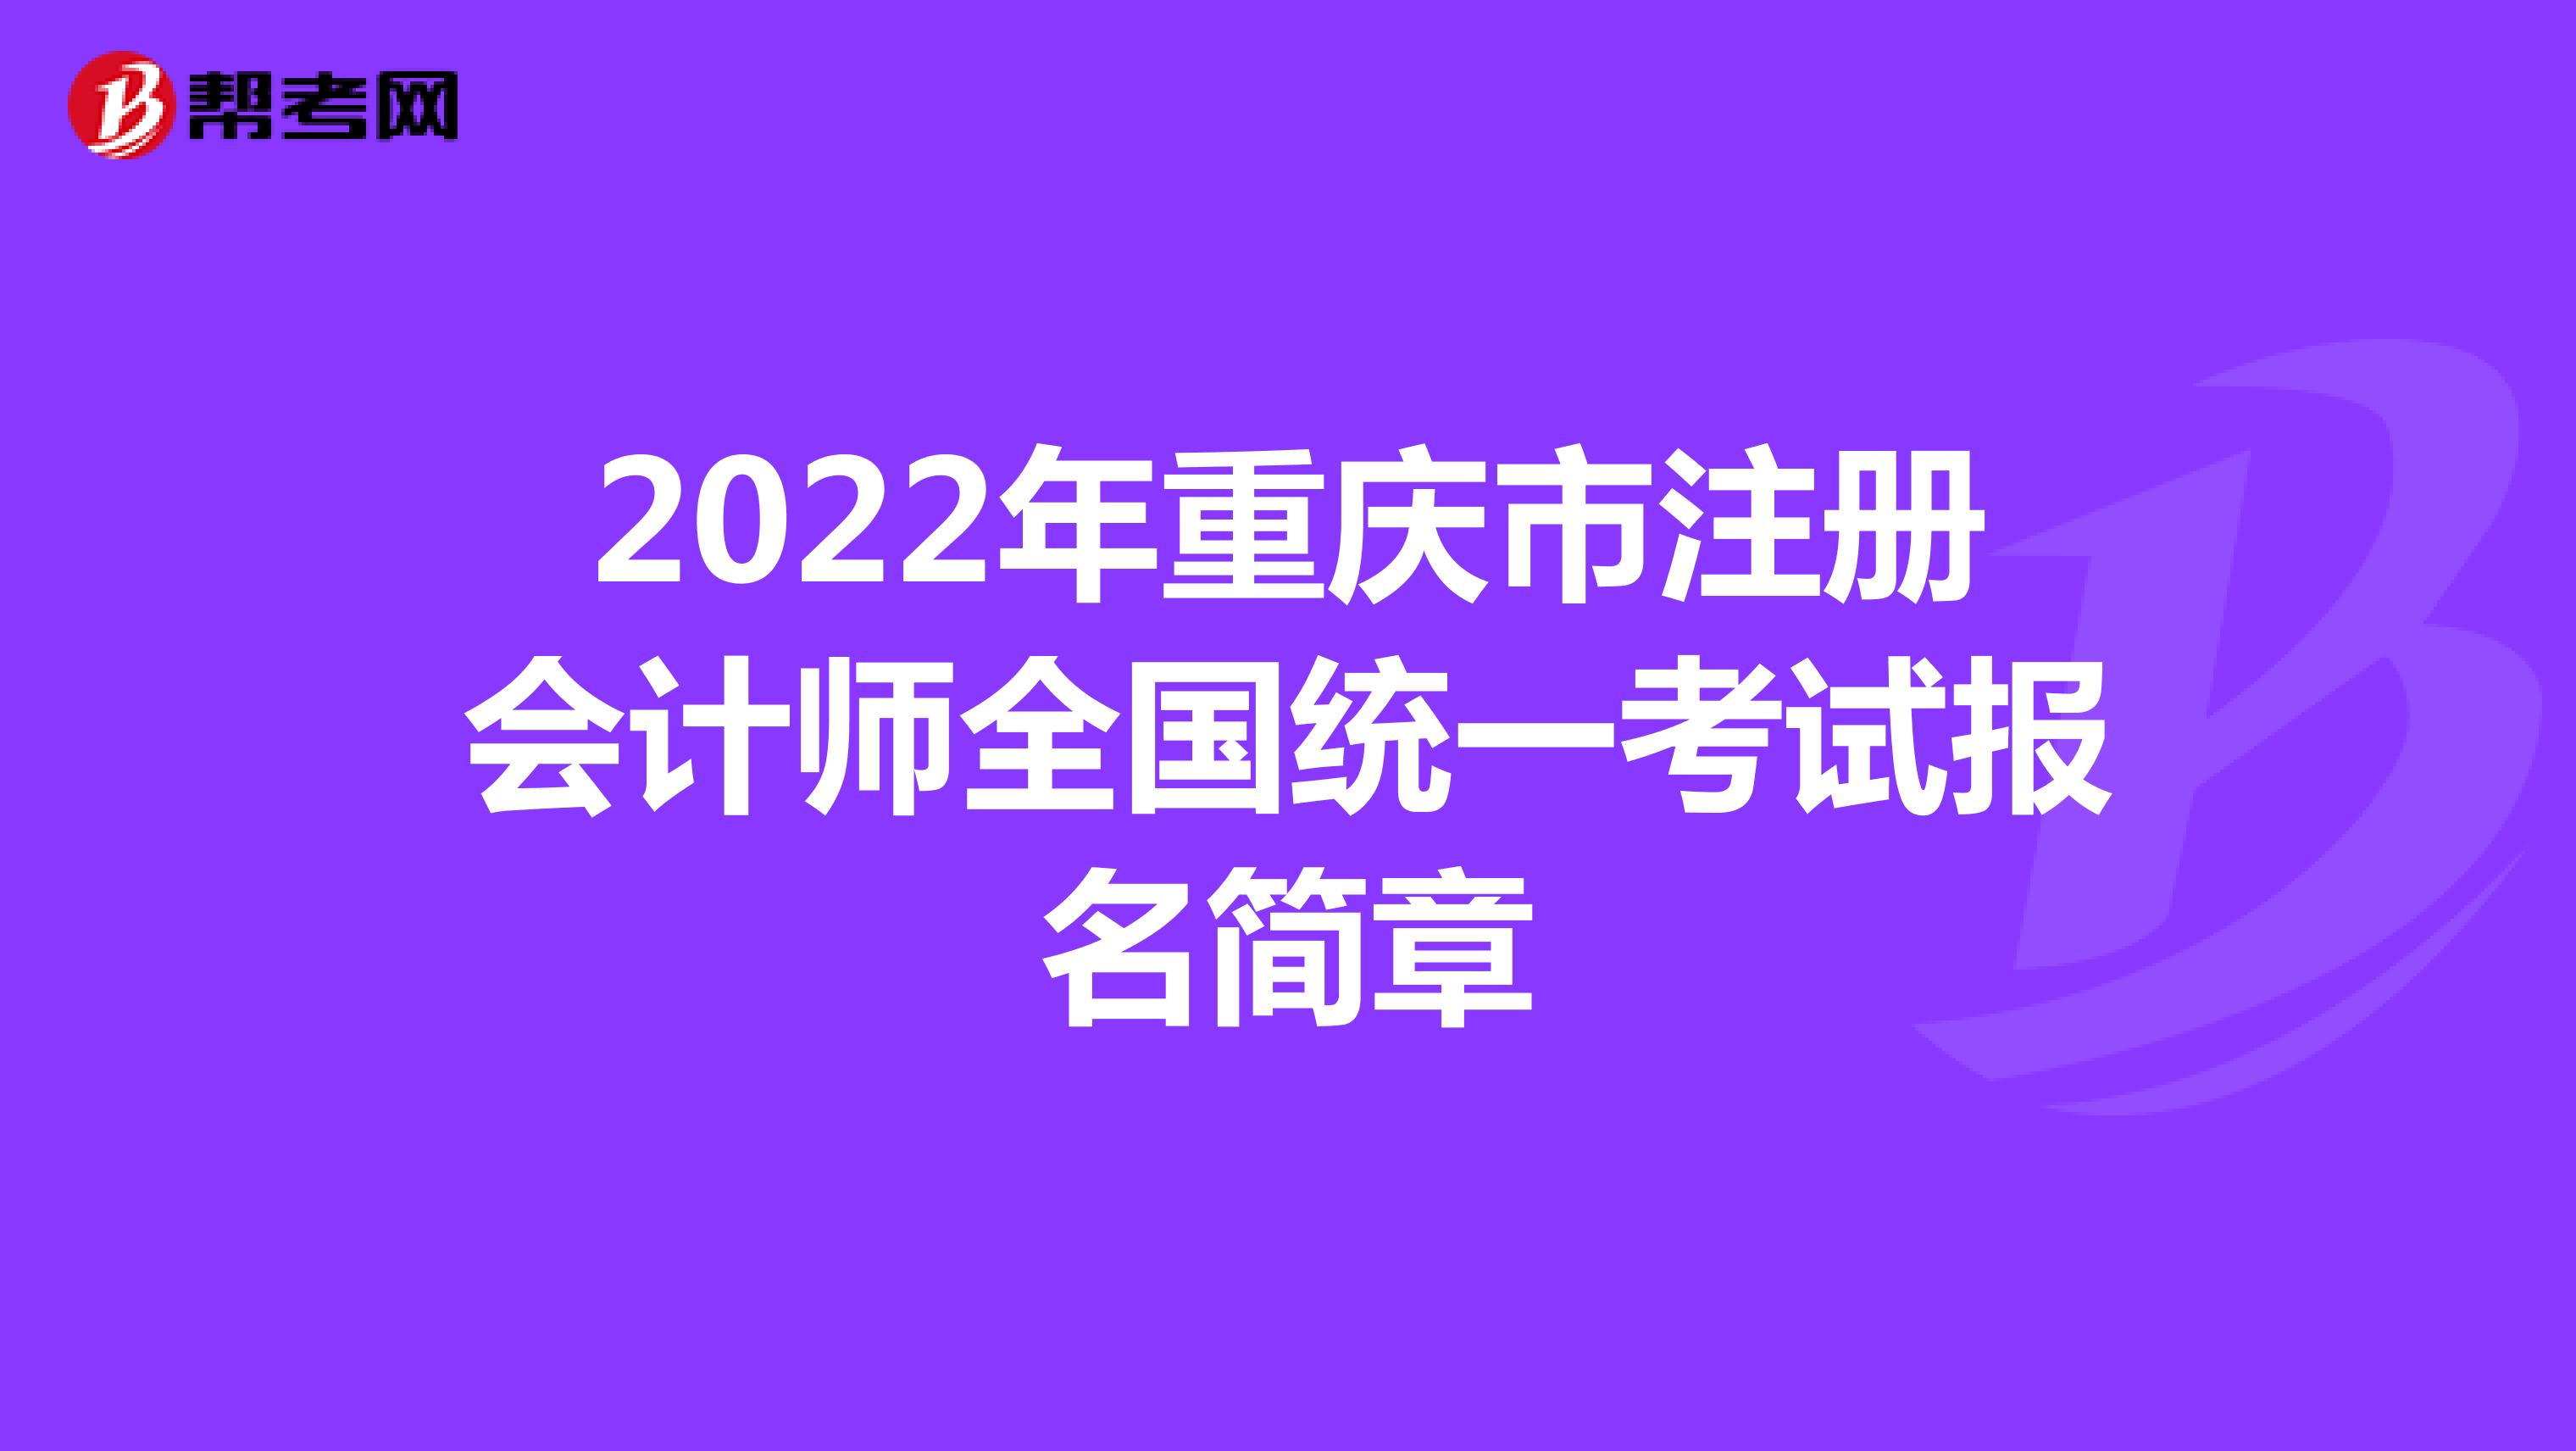 2022年重慶市注冊會計師全國統一考試報名簡章